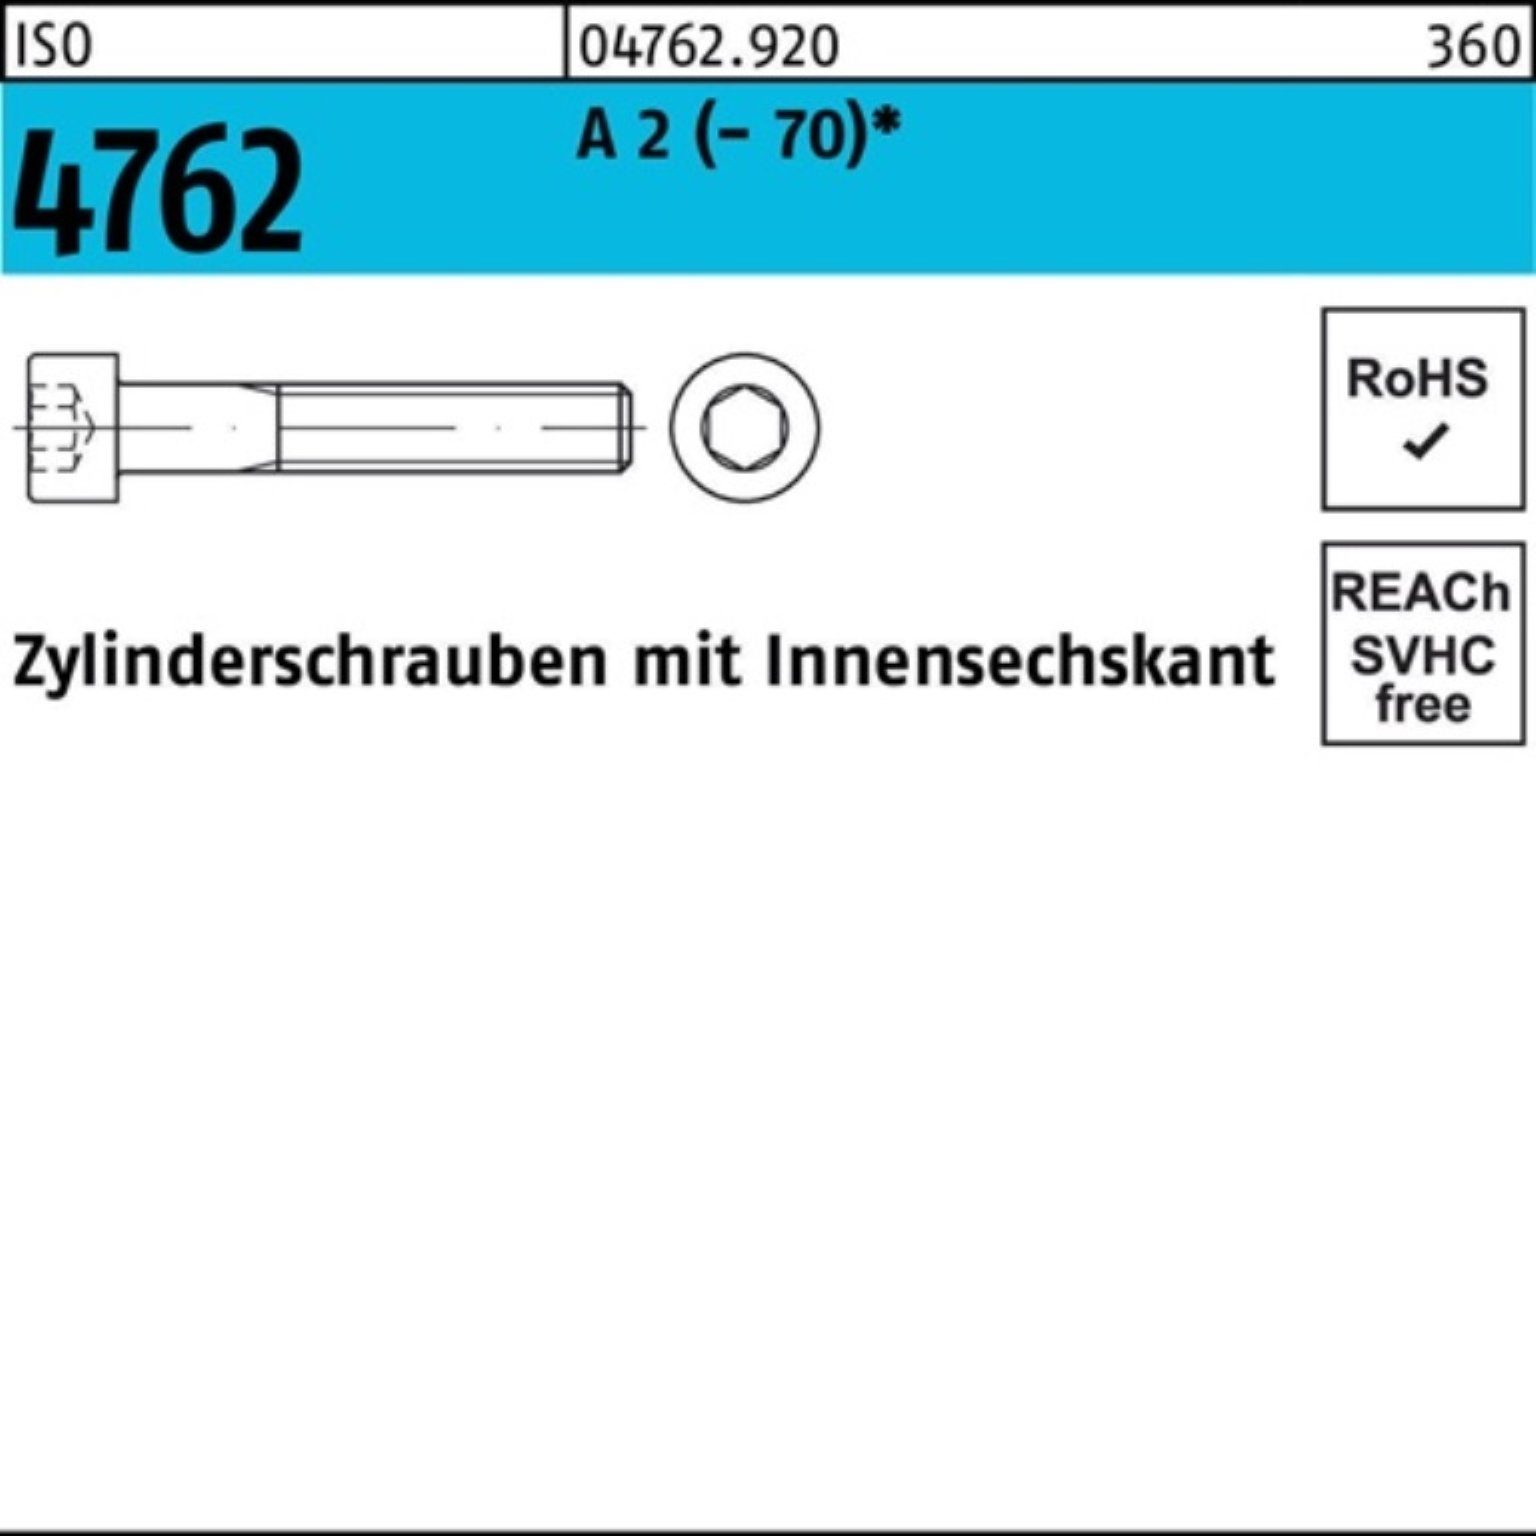 Reyher Zylinderschraube 100er Zylinderschraube 20 Pack 4762 ISO S M8x (70) 100 Innen-6kt 2 A